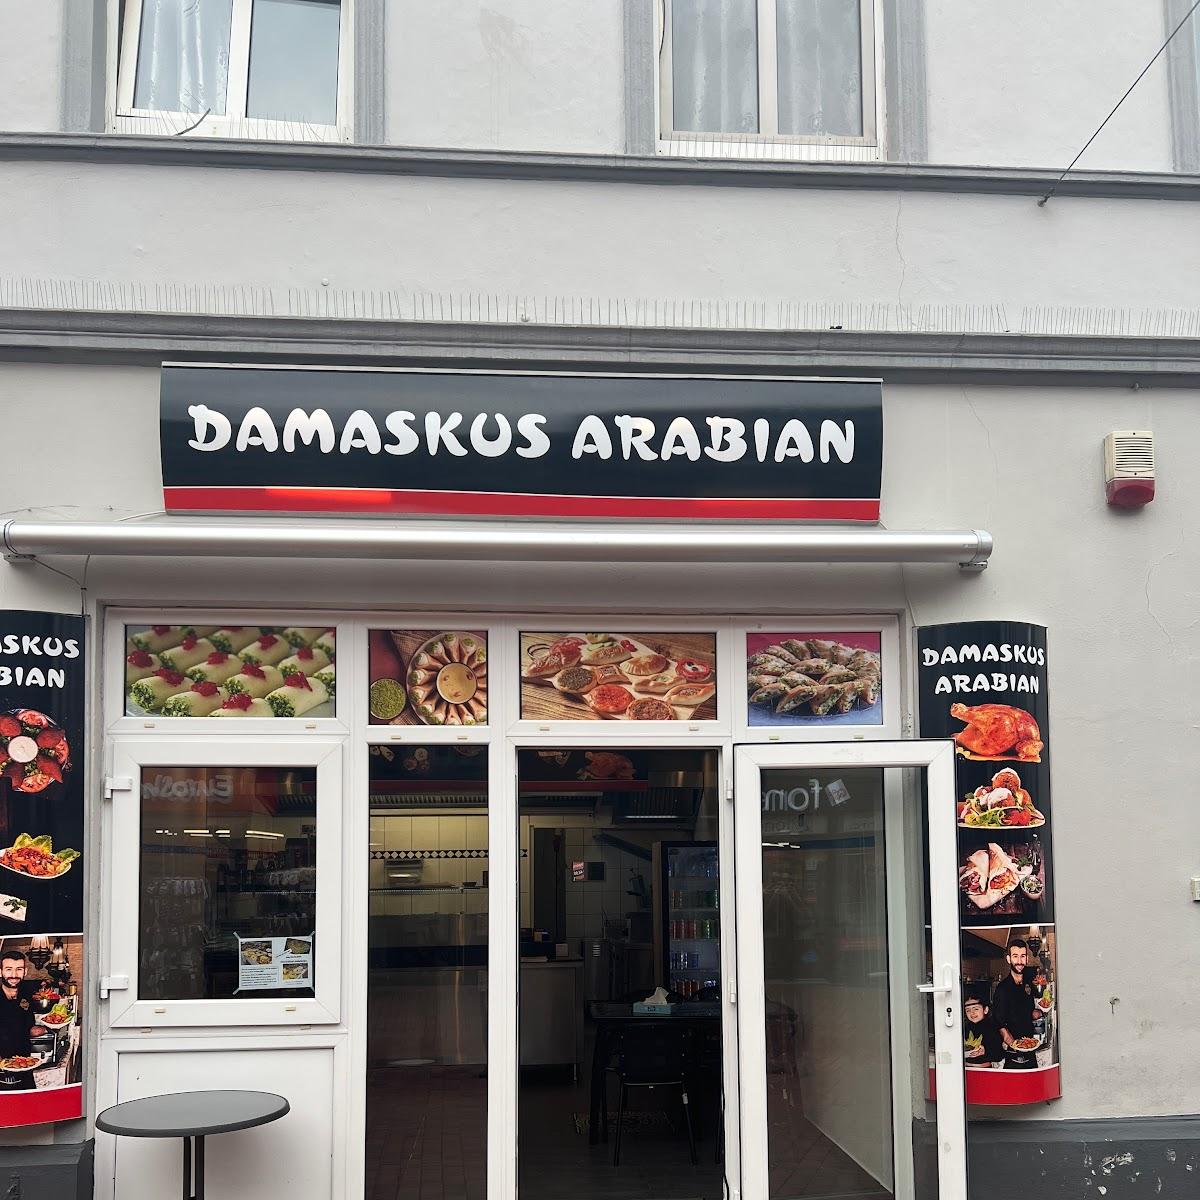 Restaurant "DAMASKUS ARABIAN" in Schleswig